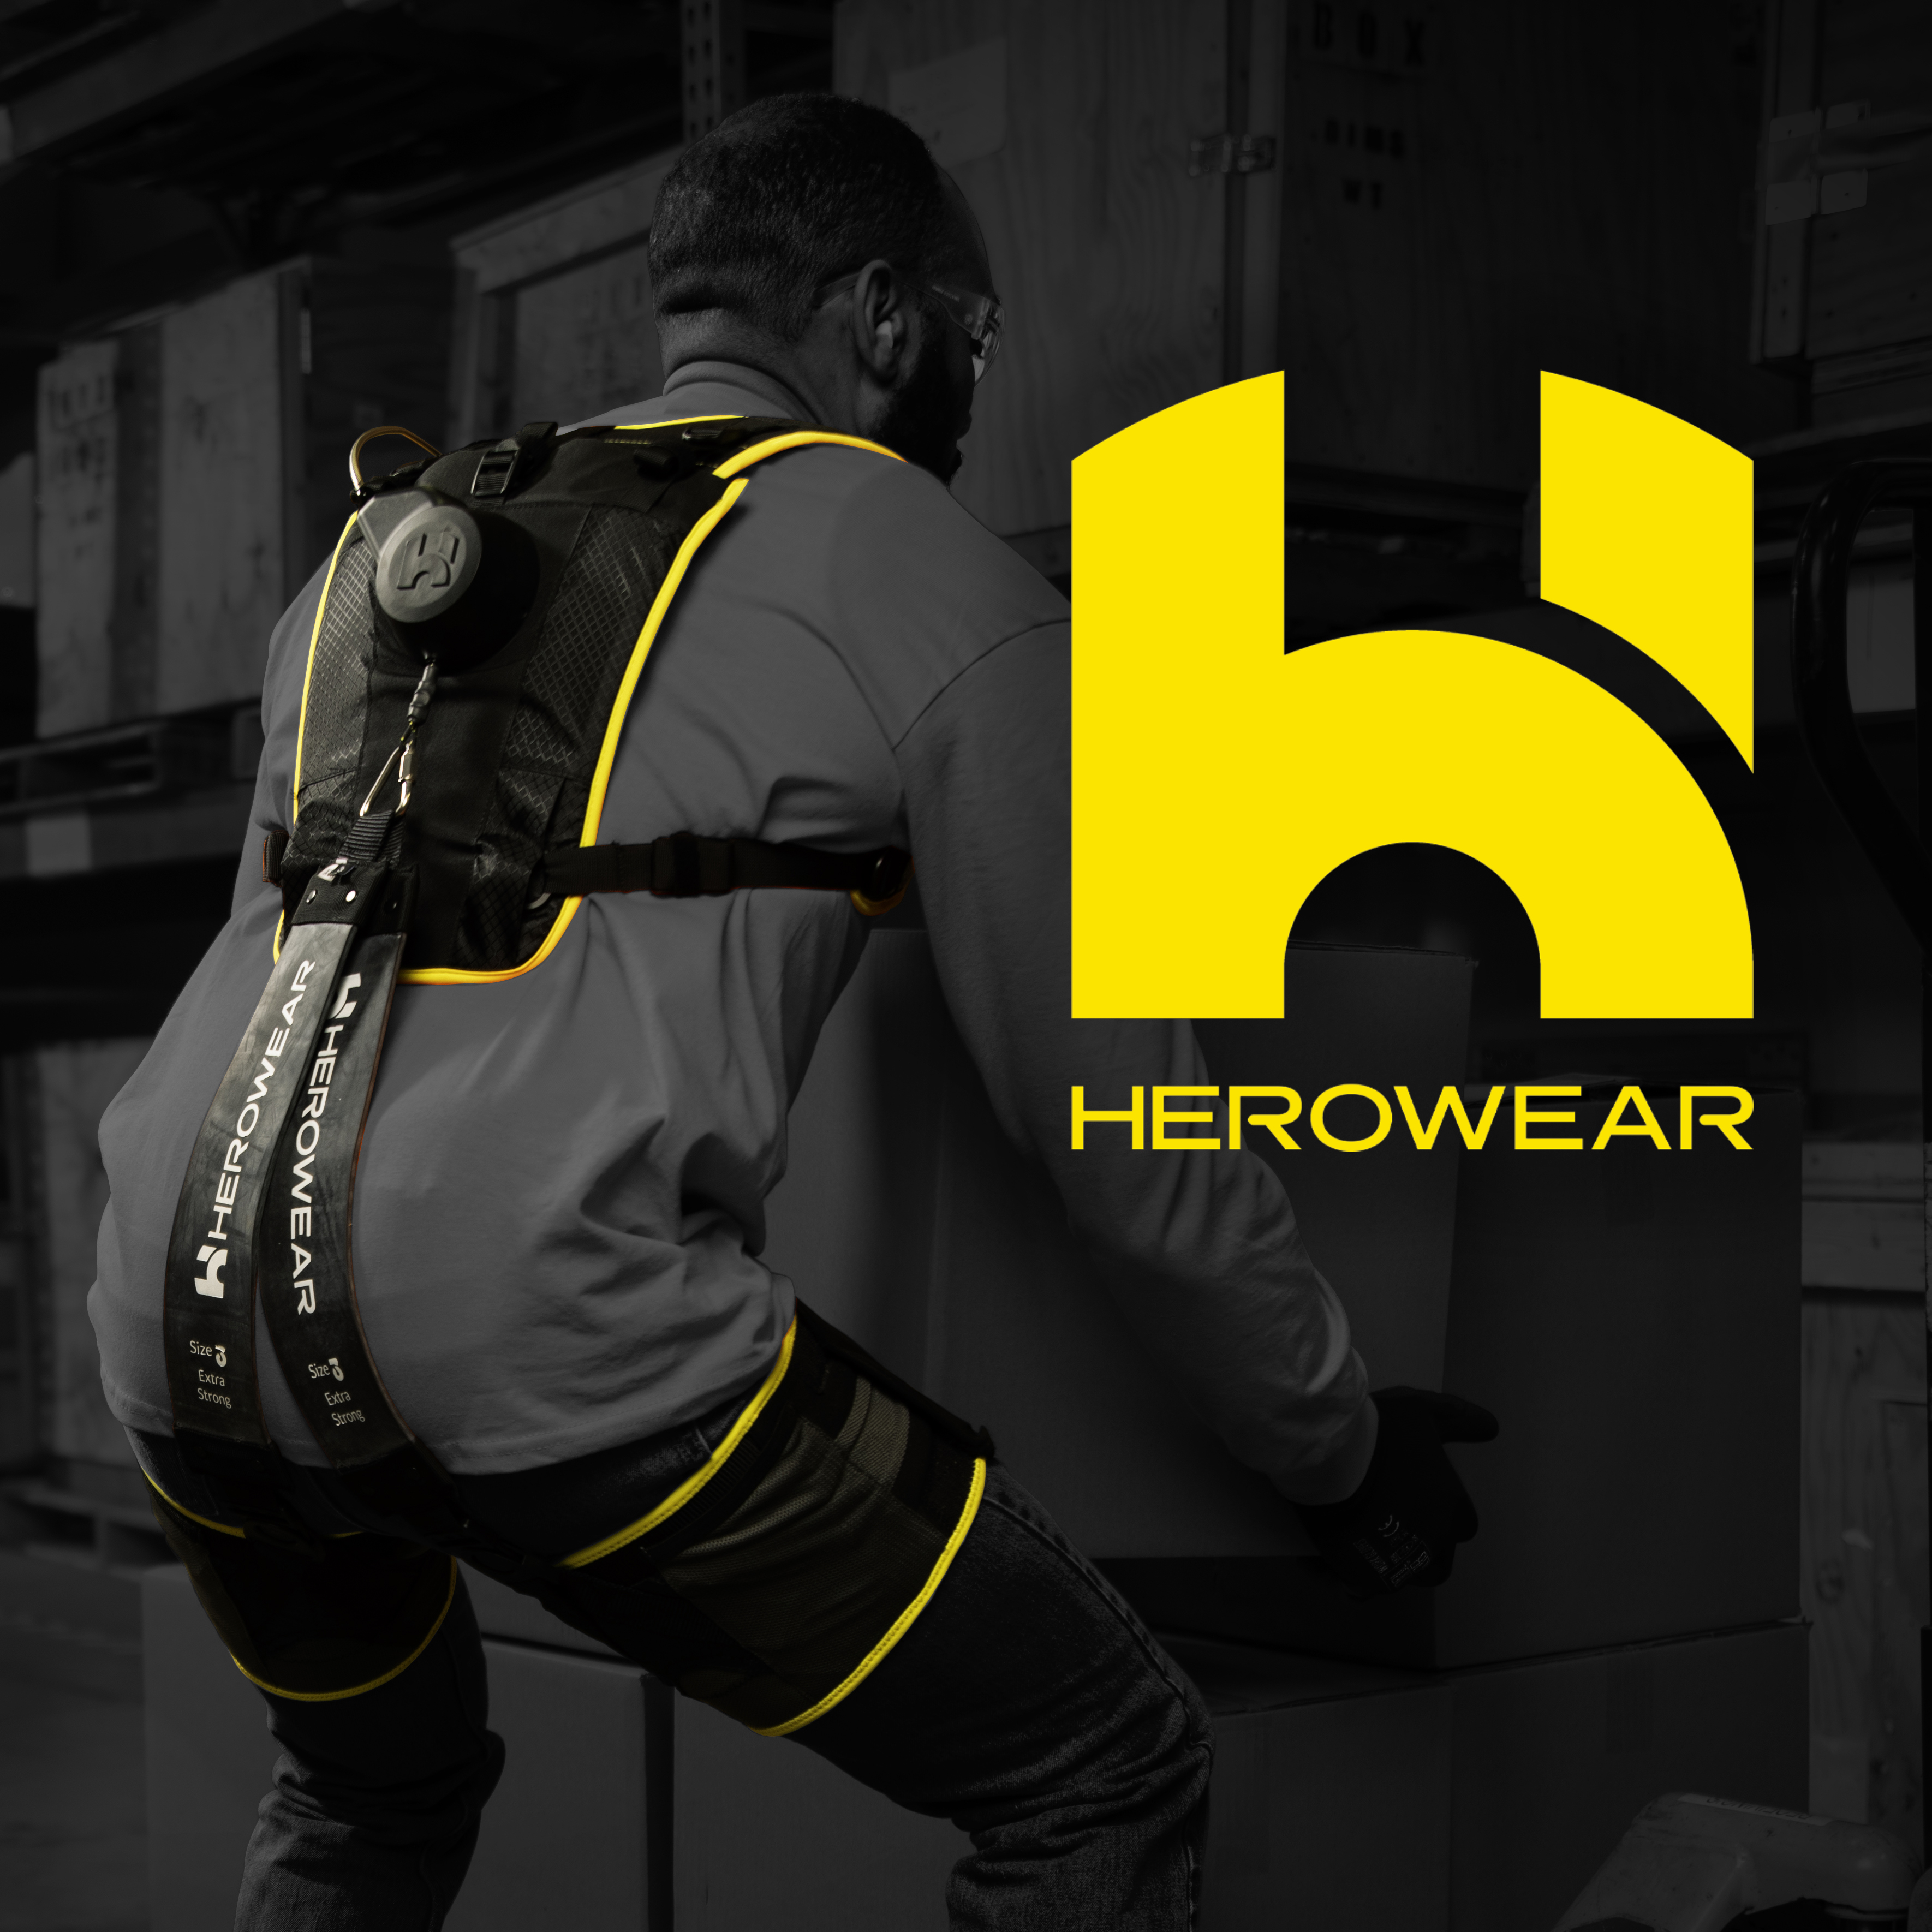 HeroWear, LLC